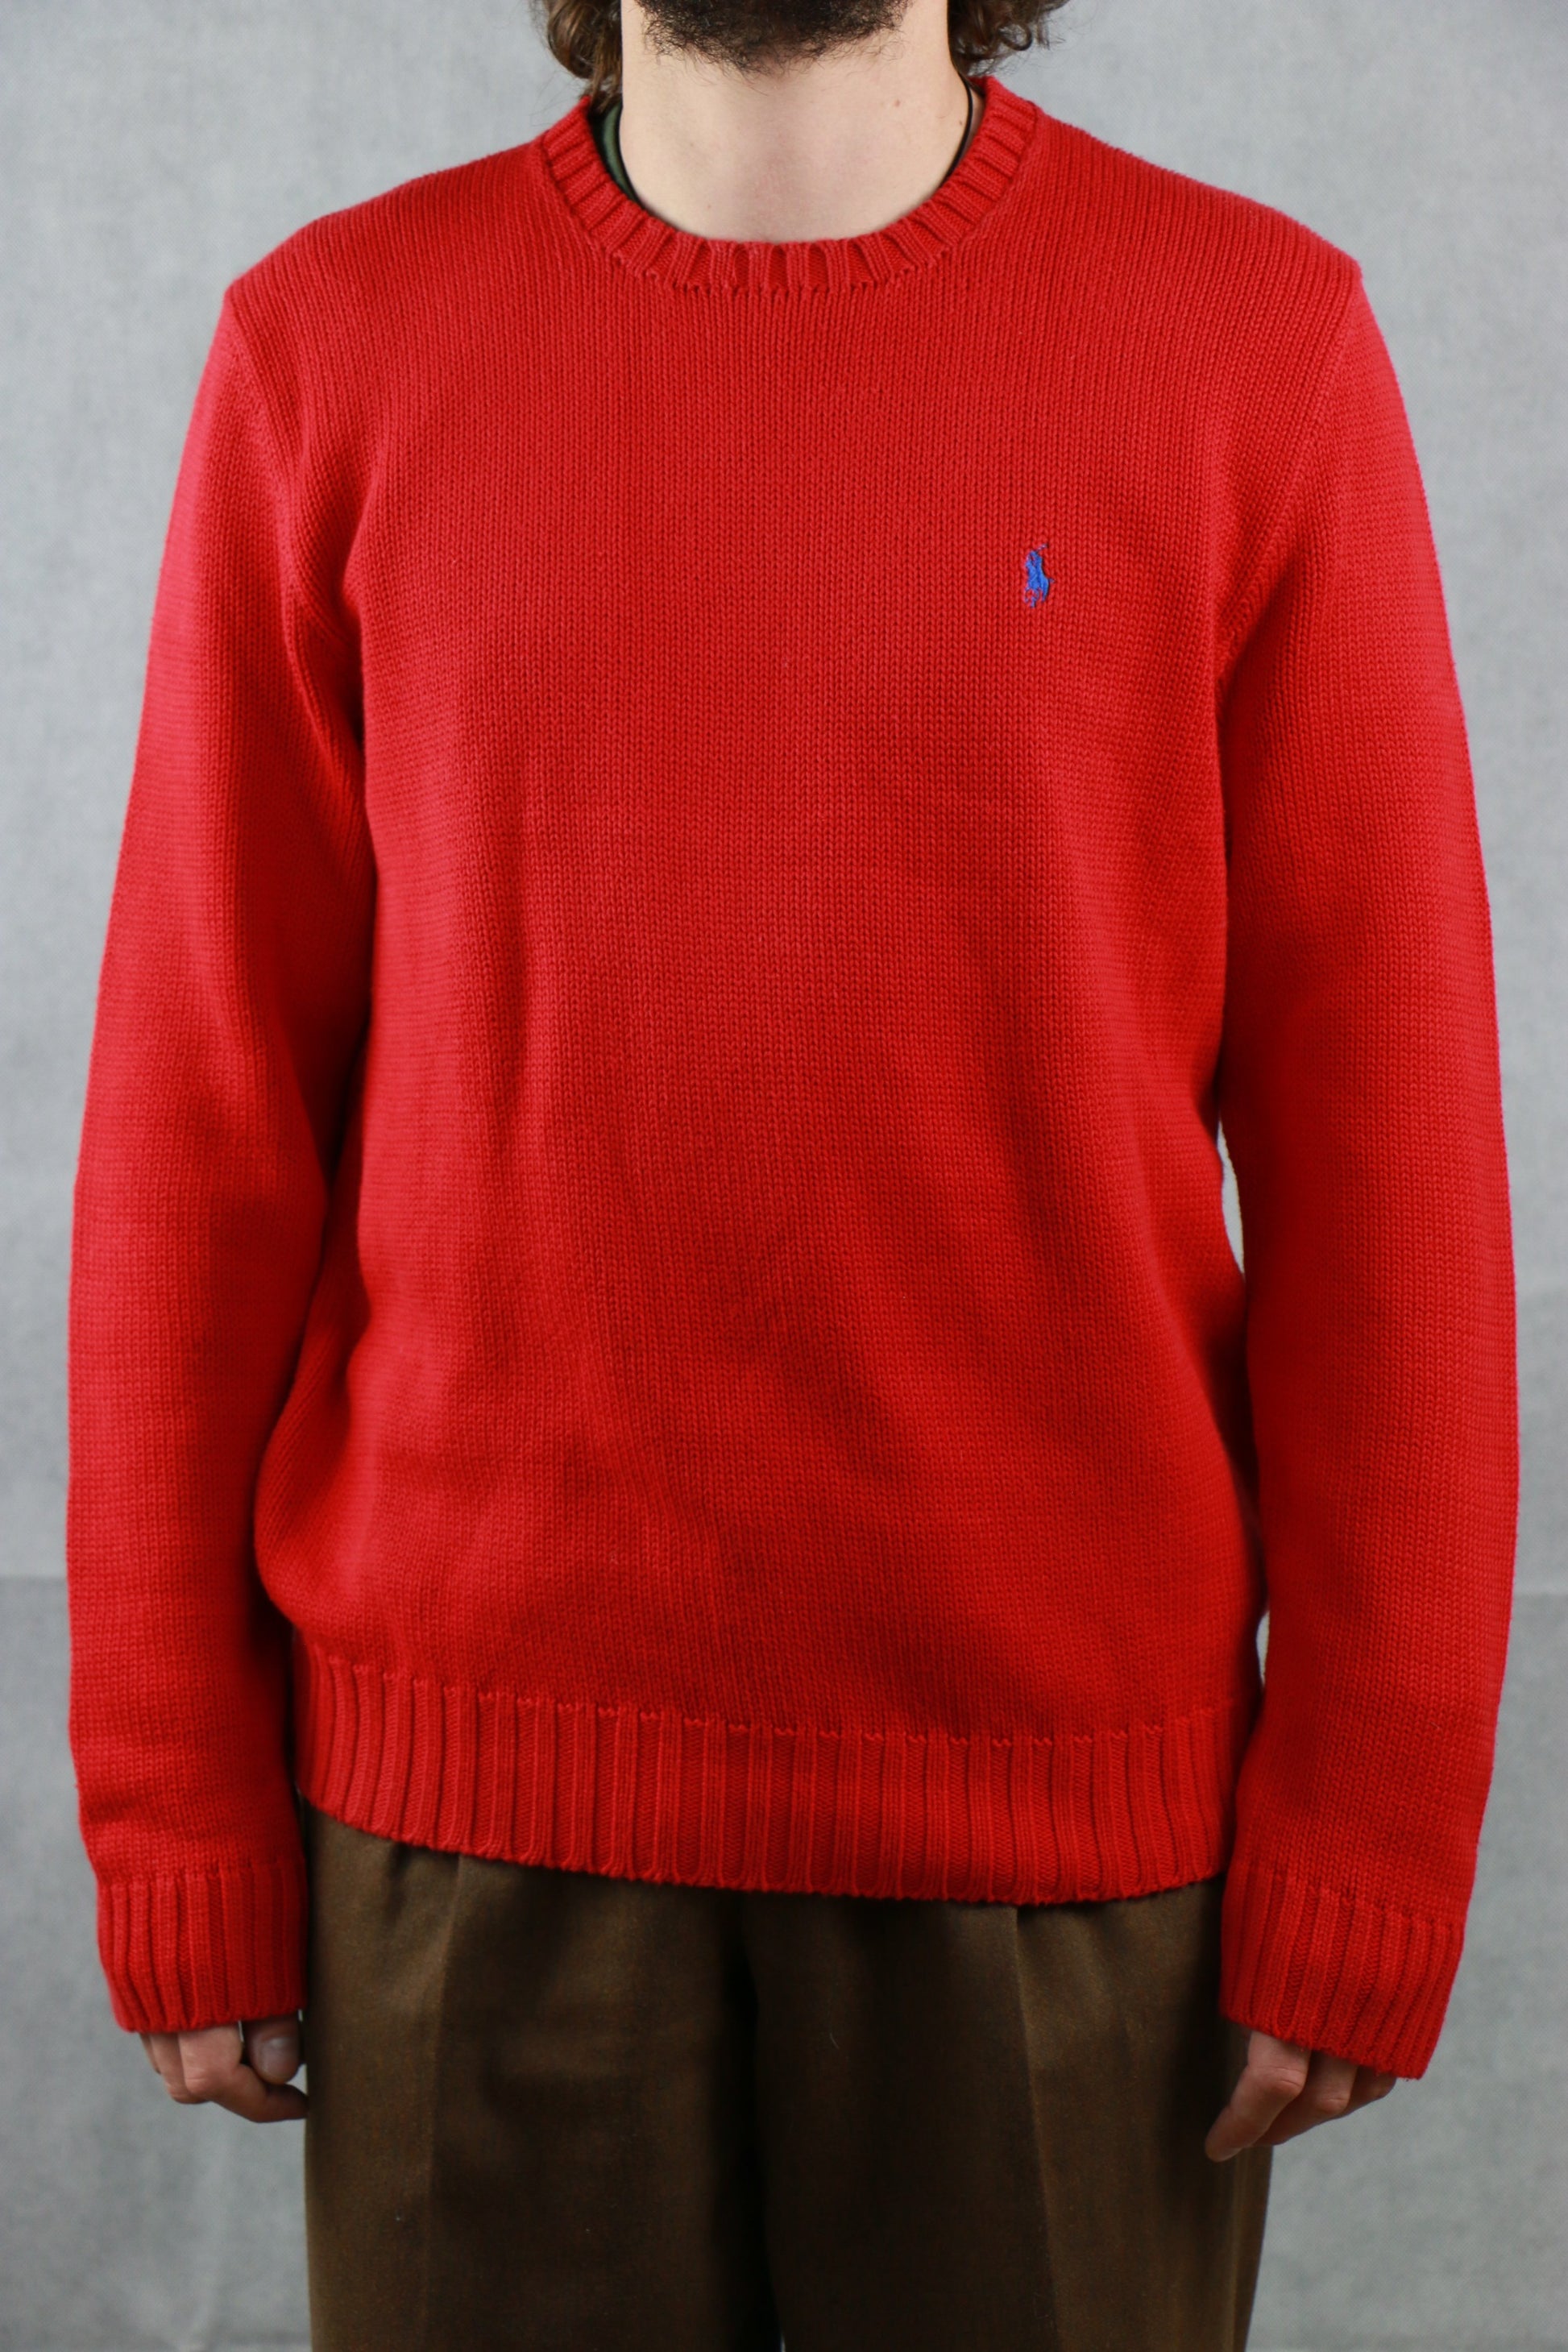 Ralph Lauren Red Sweater, clochard92.com